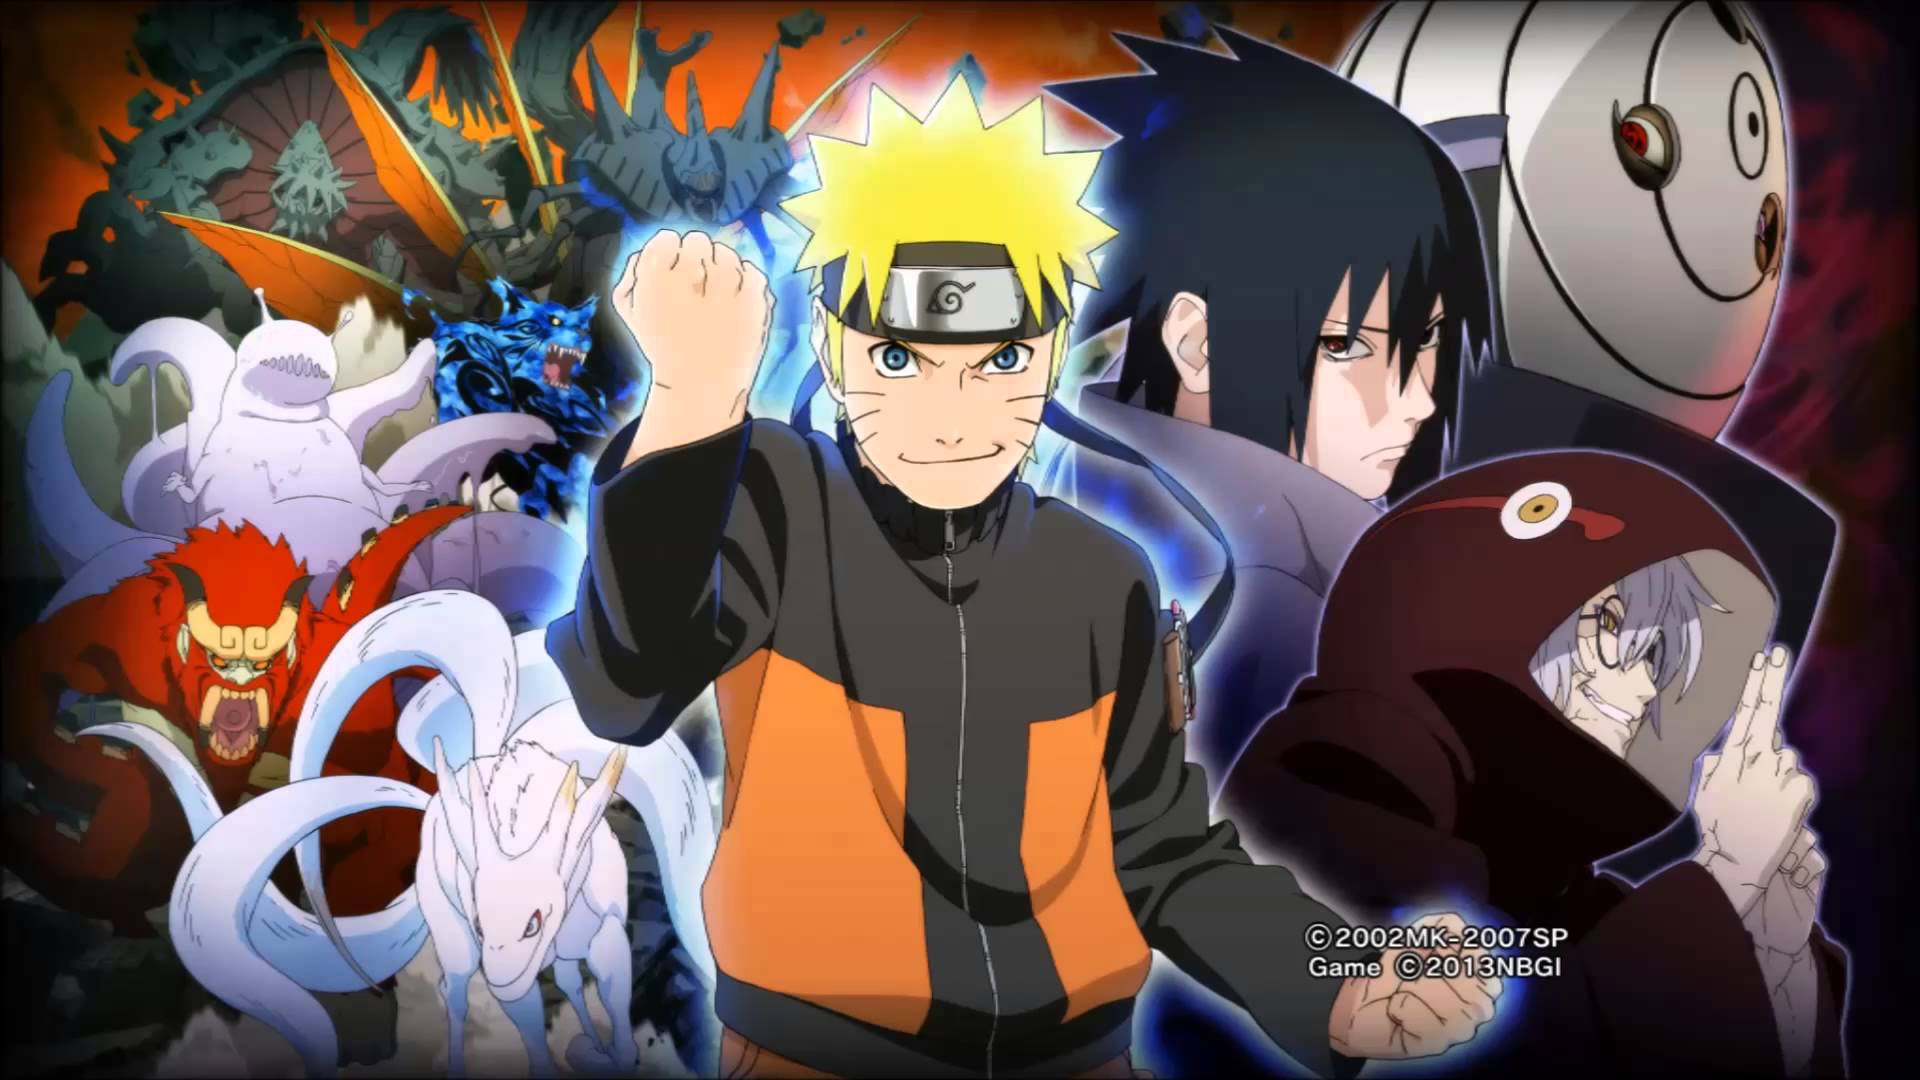 Naruto Shippuden Wallpaper HD